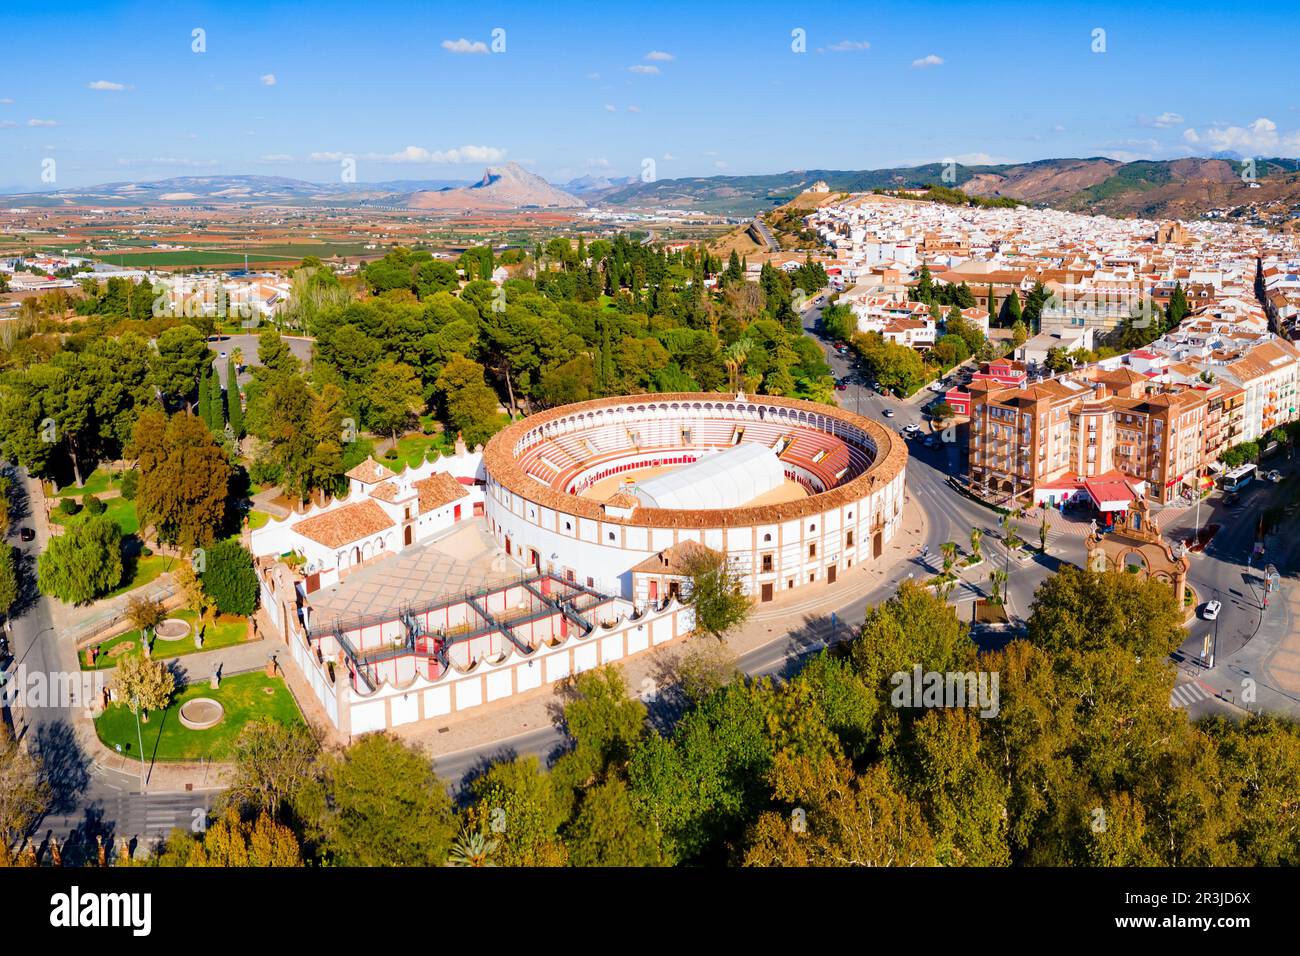 Bullring o plaza de toros edificio vista panoramica aerea in Antequera. Antequera è una città della provincia di Malaga, la comunità dell'Andalusia nel sud Foto Stock